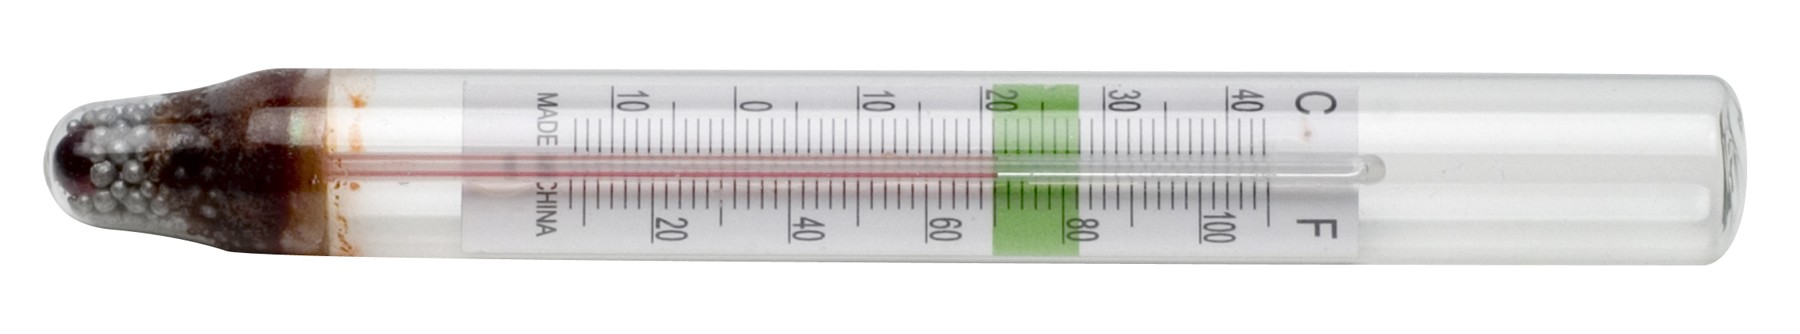 H-B DURAC Liquid-In-Glass Aquarium Thermometer; Organic Liquid Fill